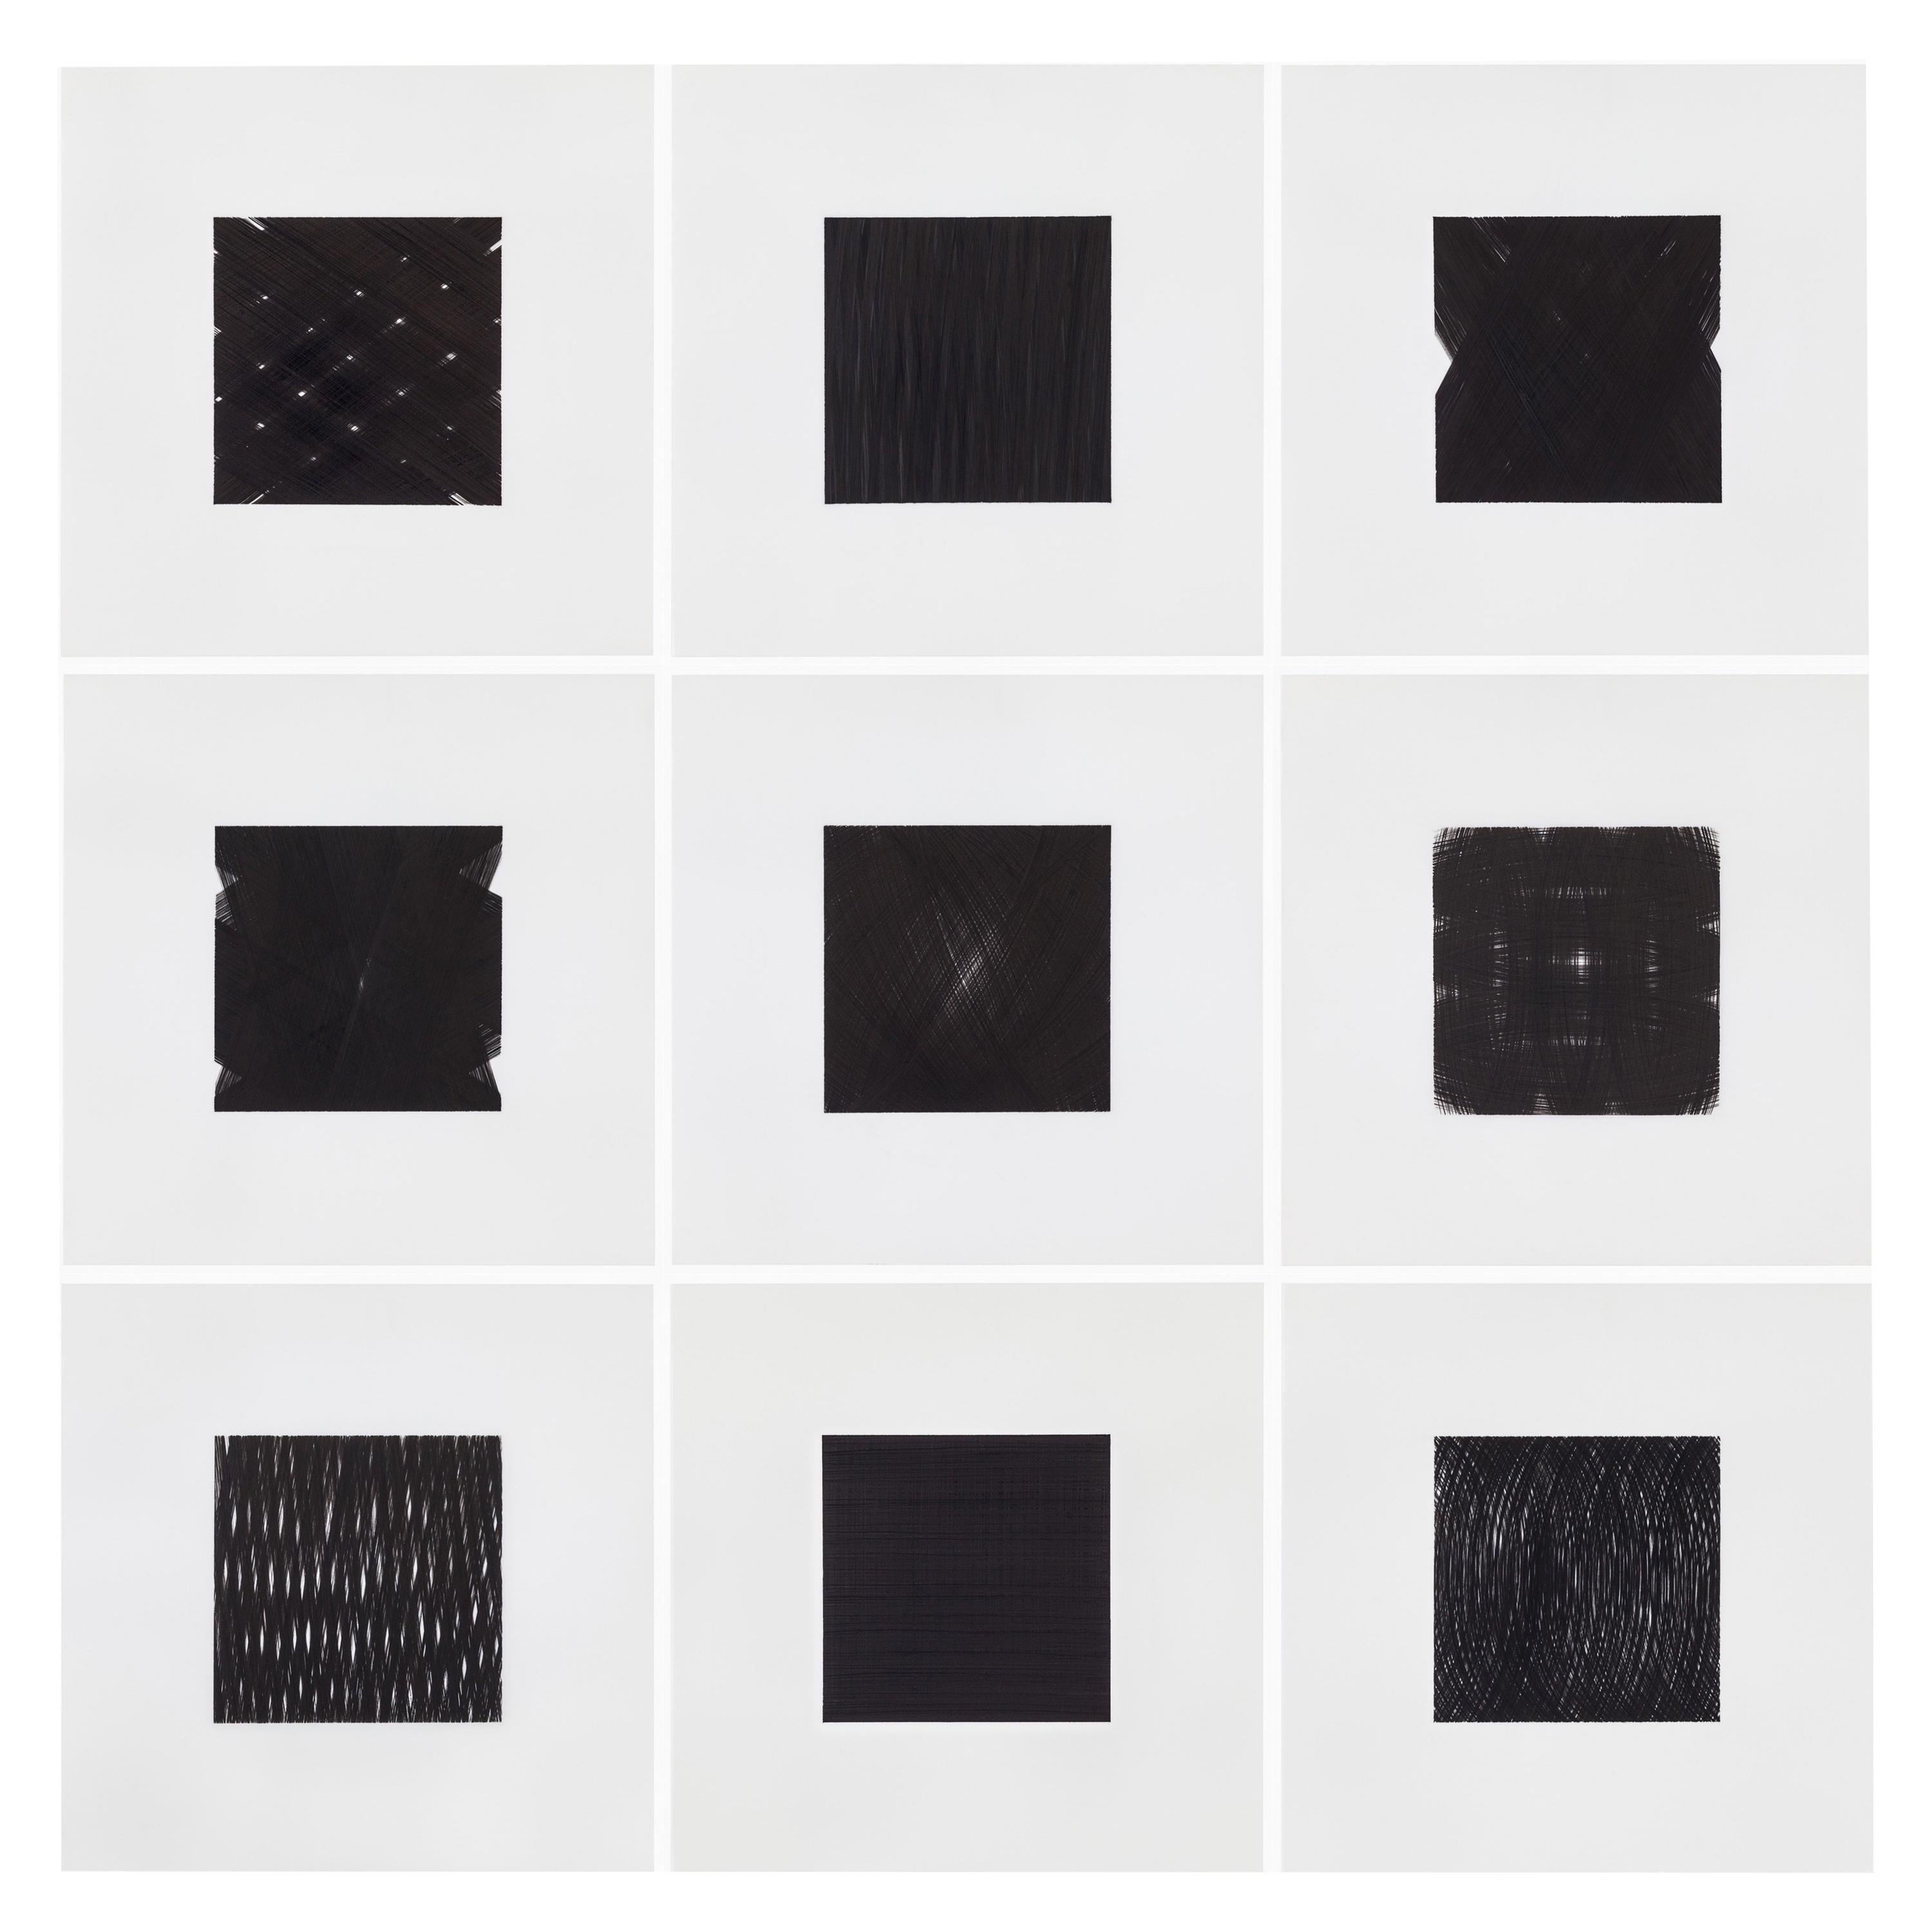 Encre noire sur dessins Mylar, série Appearance de Patrick Carrara, 2013 - 2015